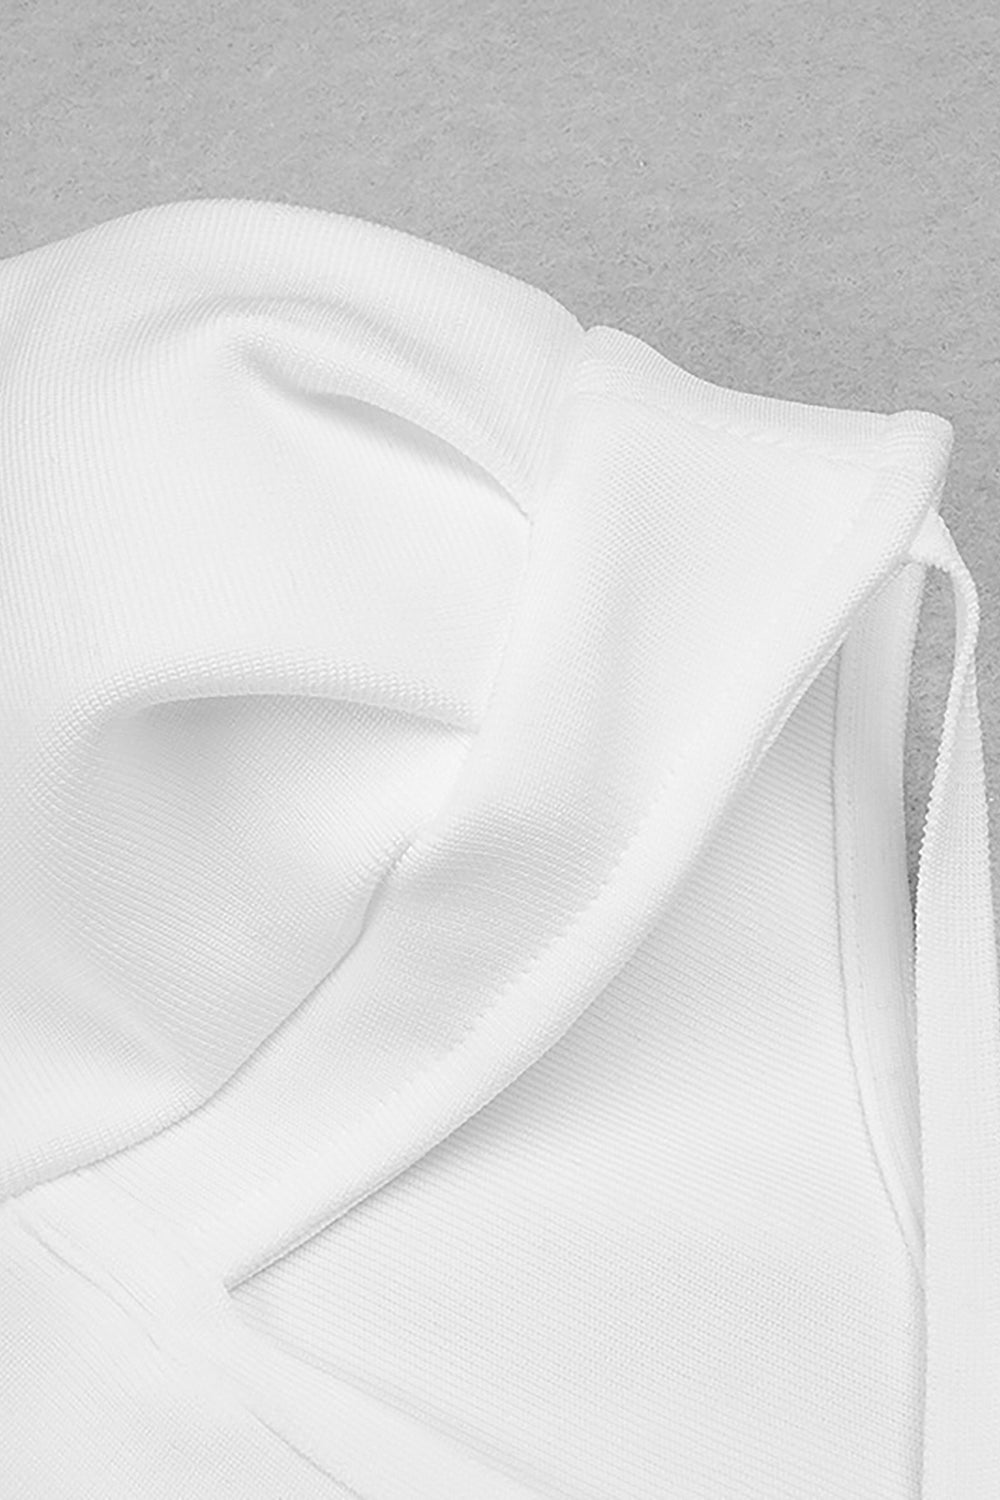 Vestido blanco de manga larga con un hombro descubierto y abertura alta